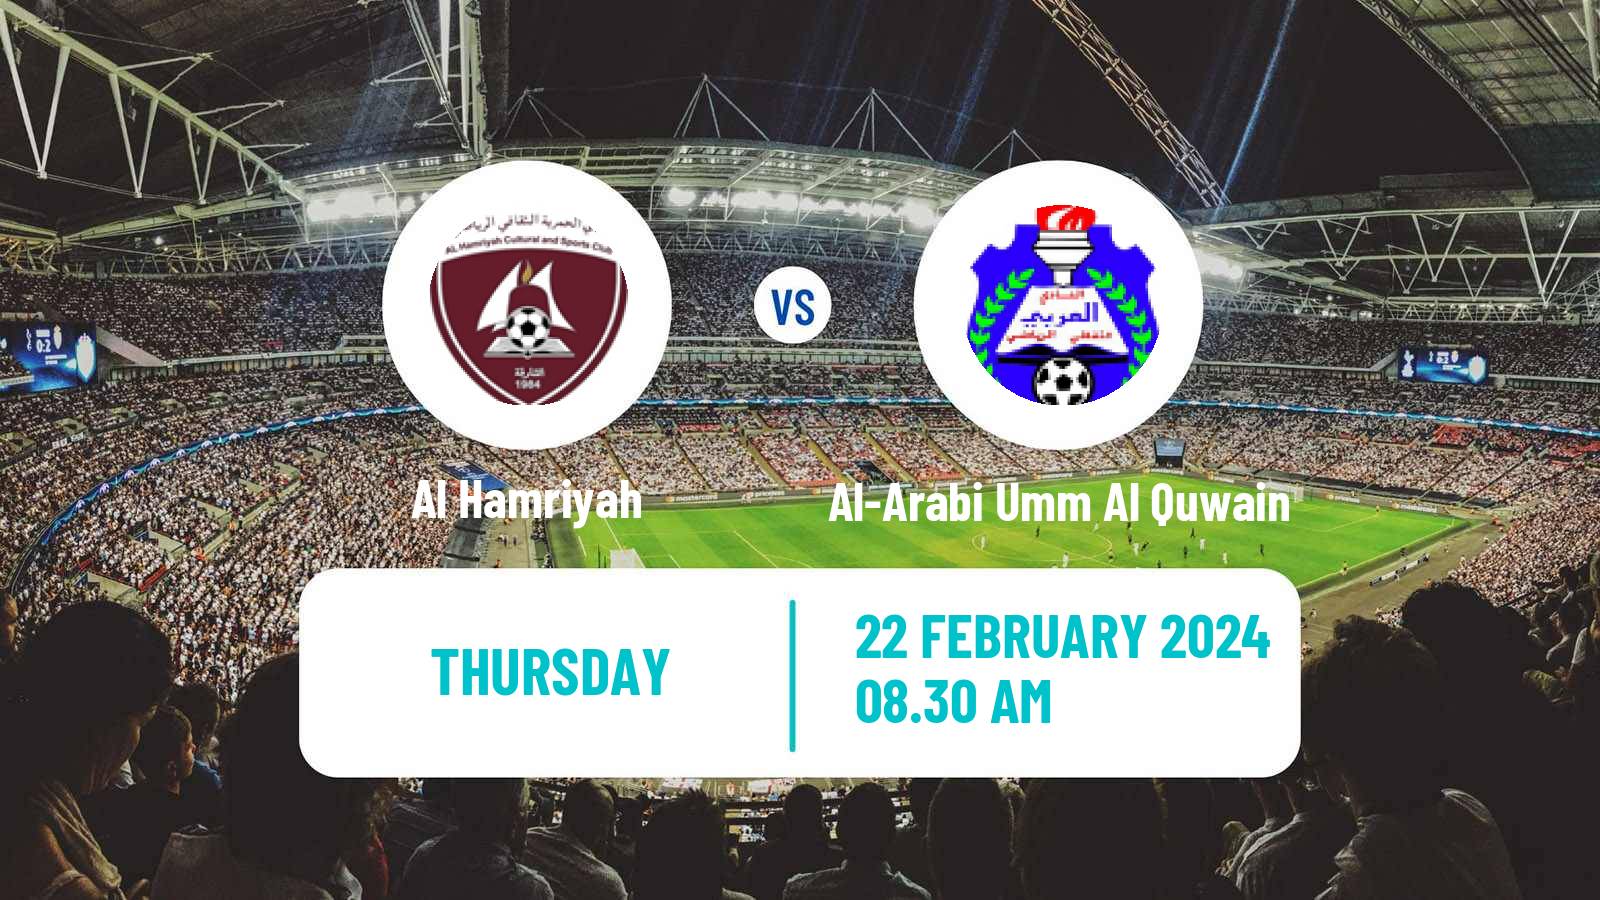 Soccer UAE Division 1 Al Hamriyah - Al-Arabi Umm Al Quwain